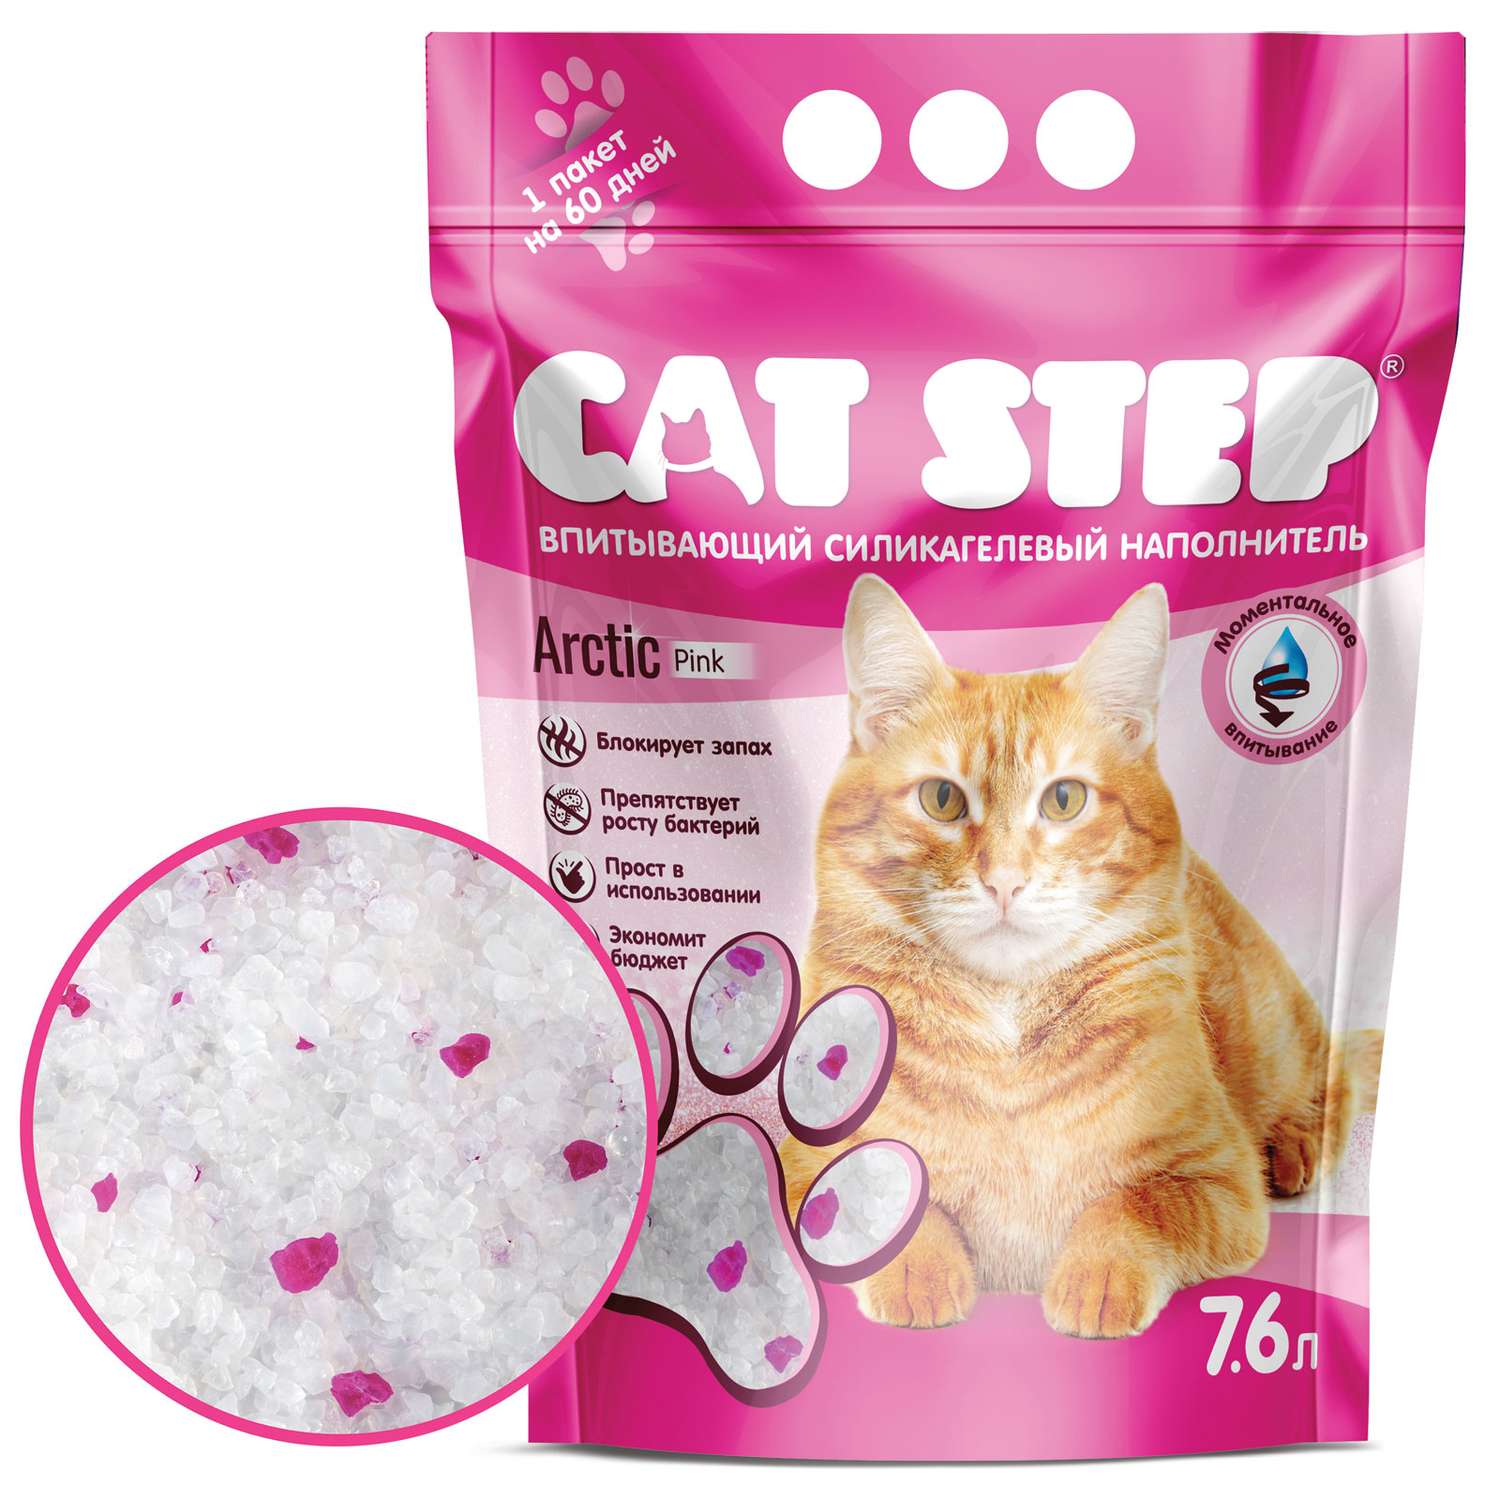 Наполнитель для кошек Cat Step Arctic Pink впитывающий силикагелевый 7.6л - фото 1